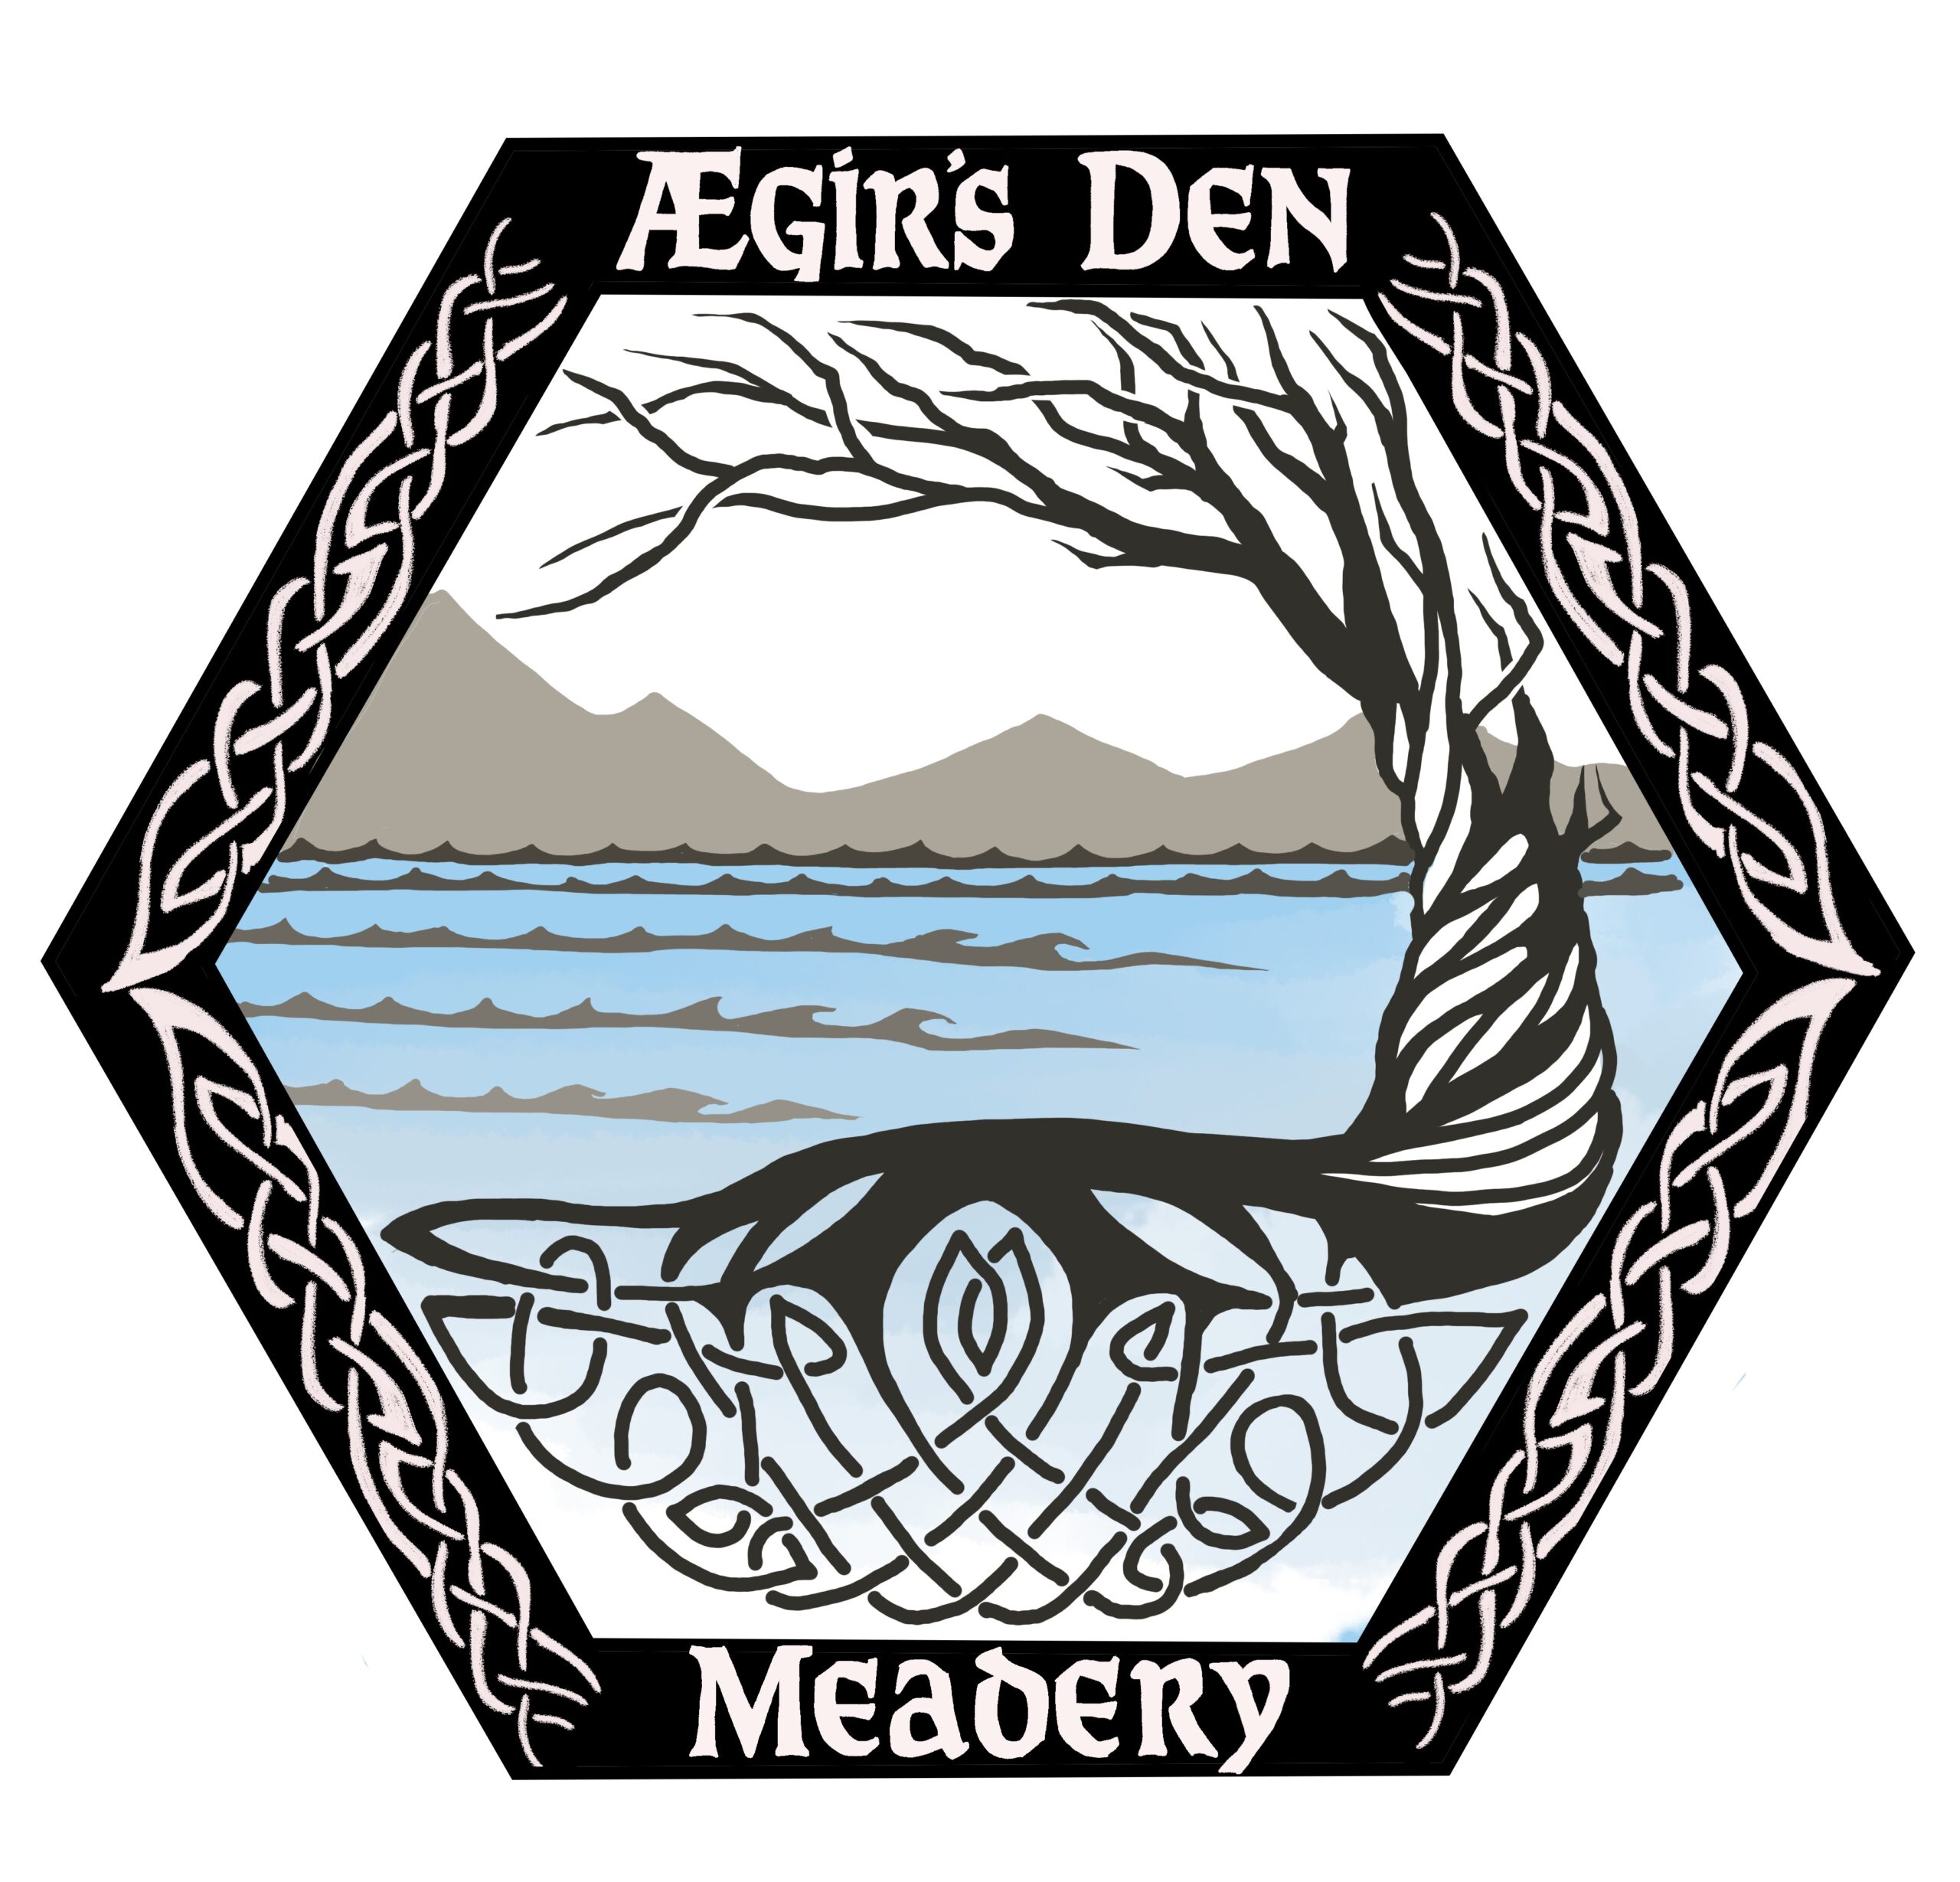 Aegir's Den Meadery